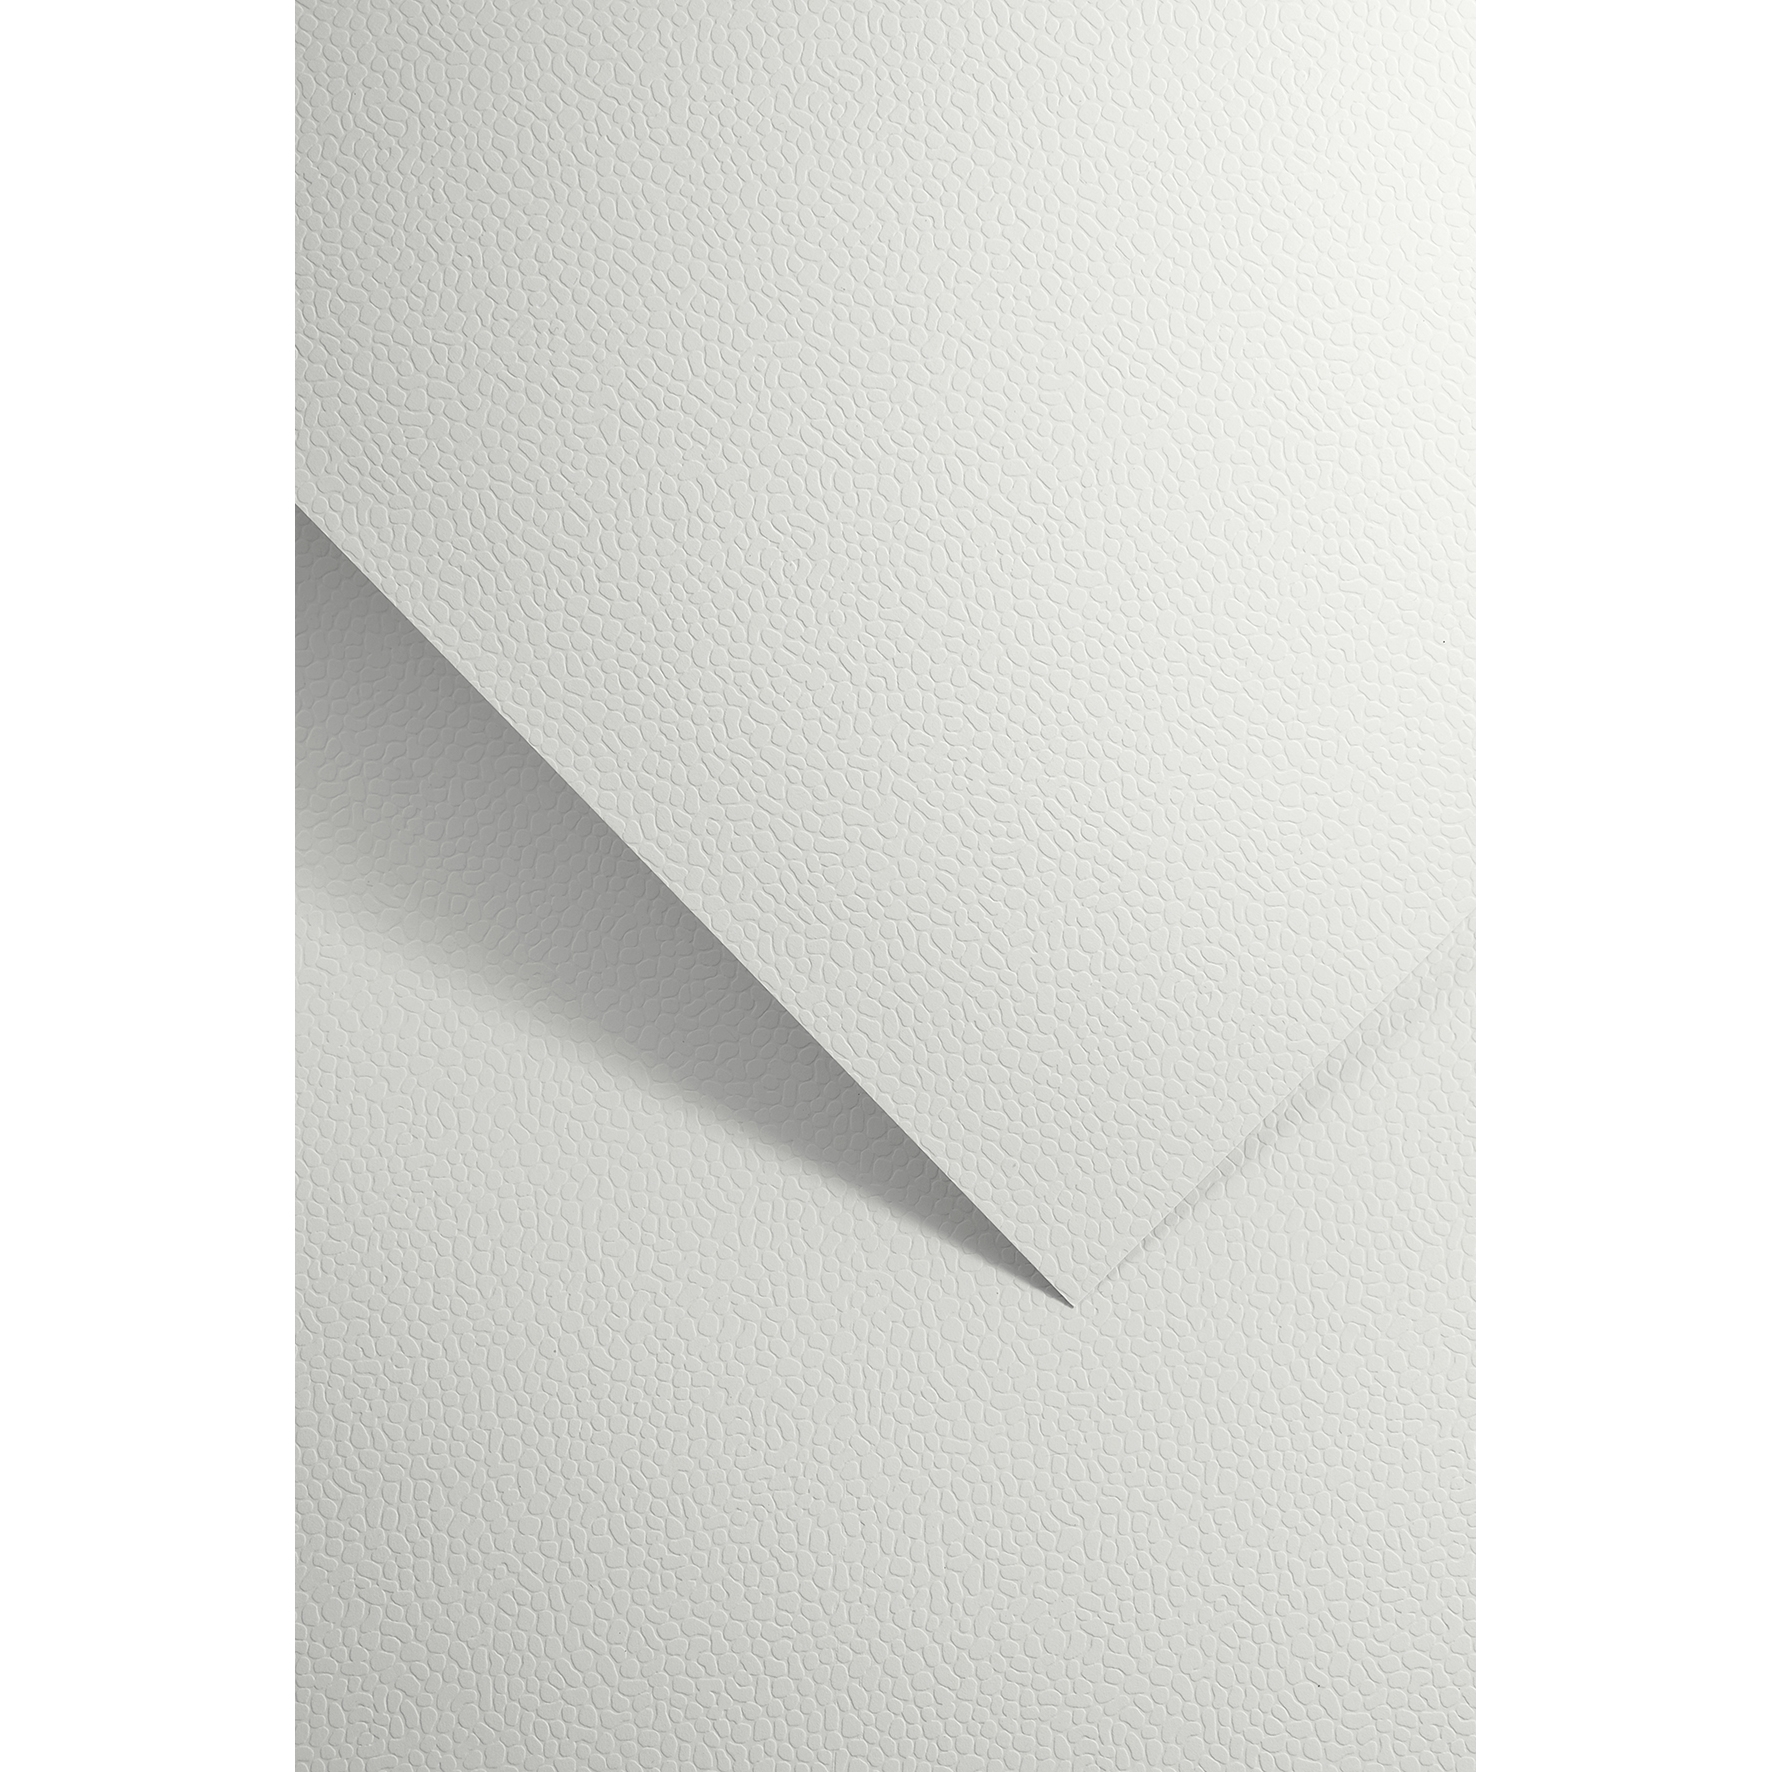 Ozdobný papír Mozaika, bílý, 230g, 20ks